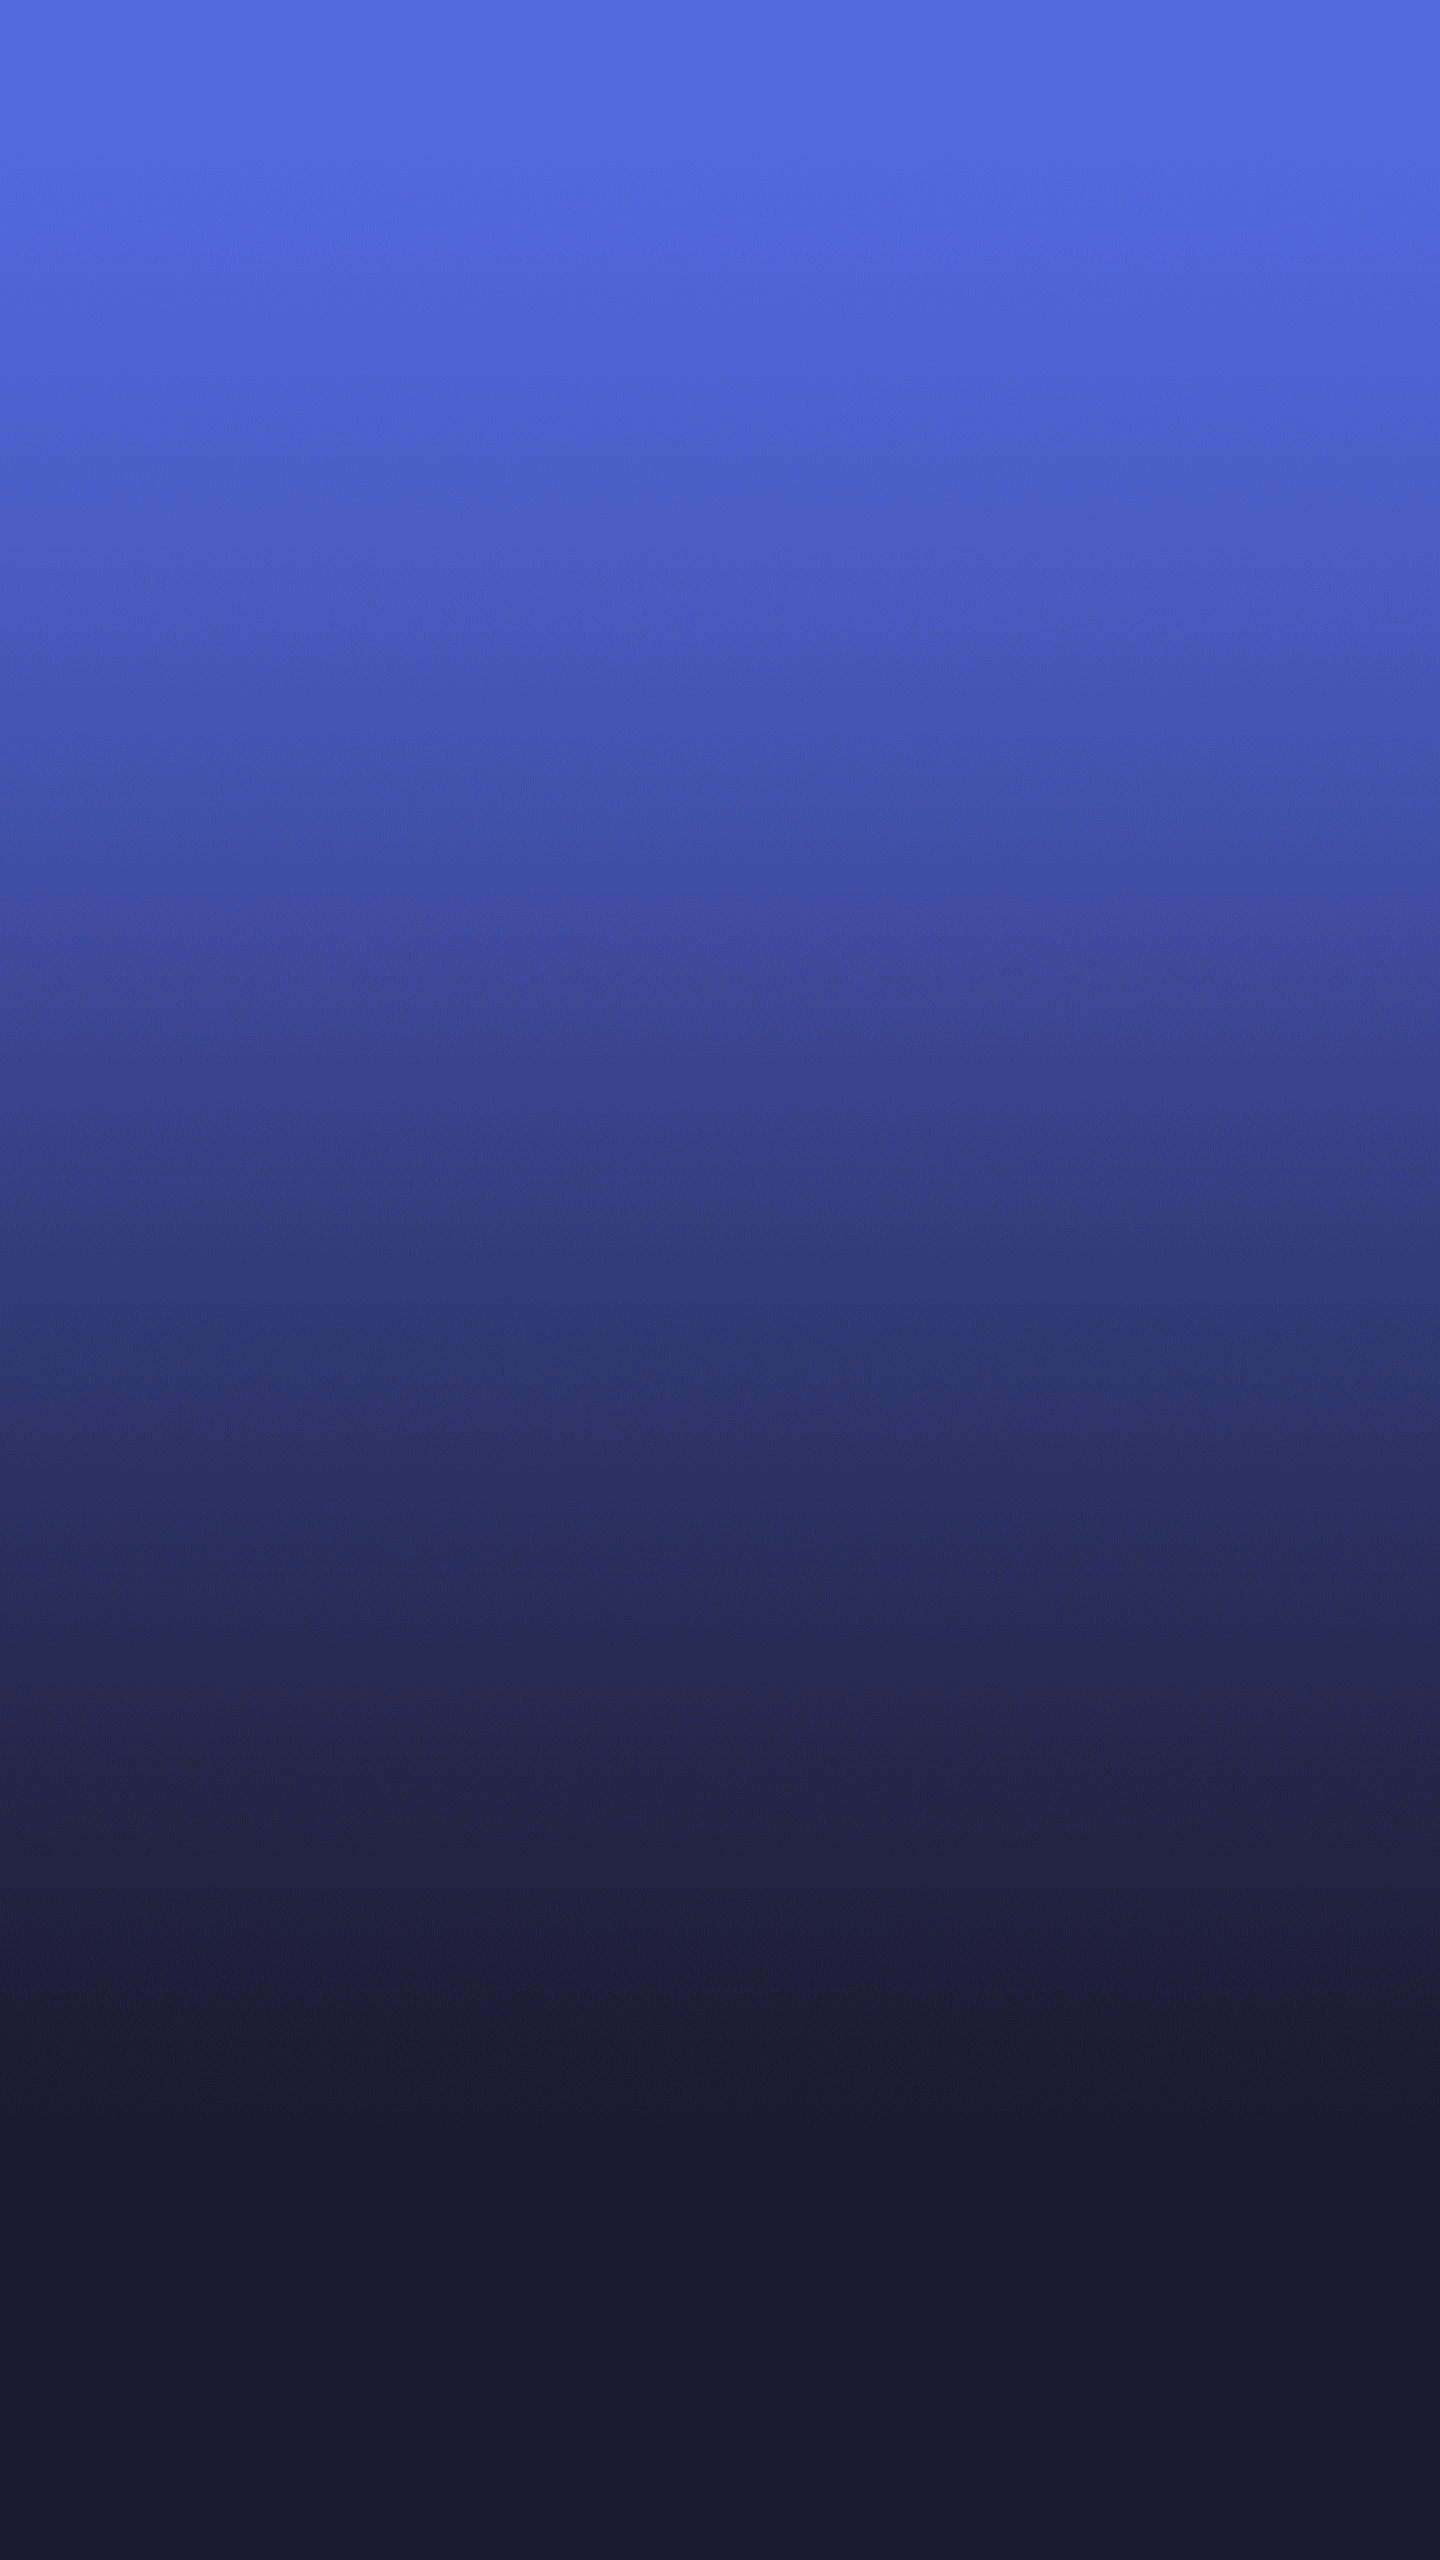 삼성 갤럭시 s8 벽지,푸른,제비꽃,보라색,검정,짙은 청록색